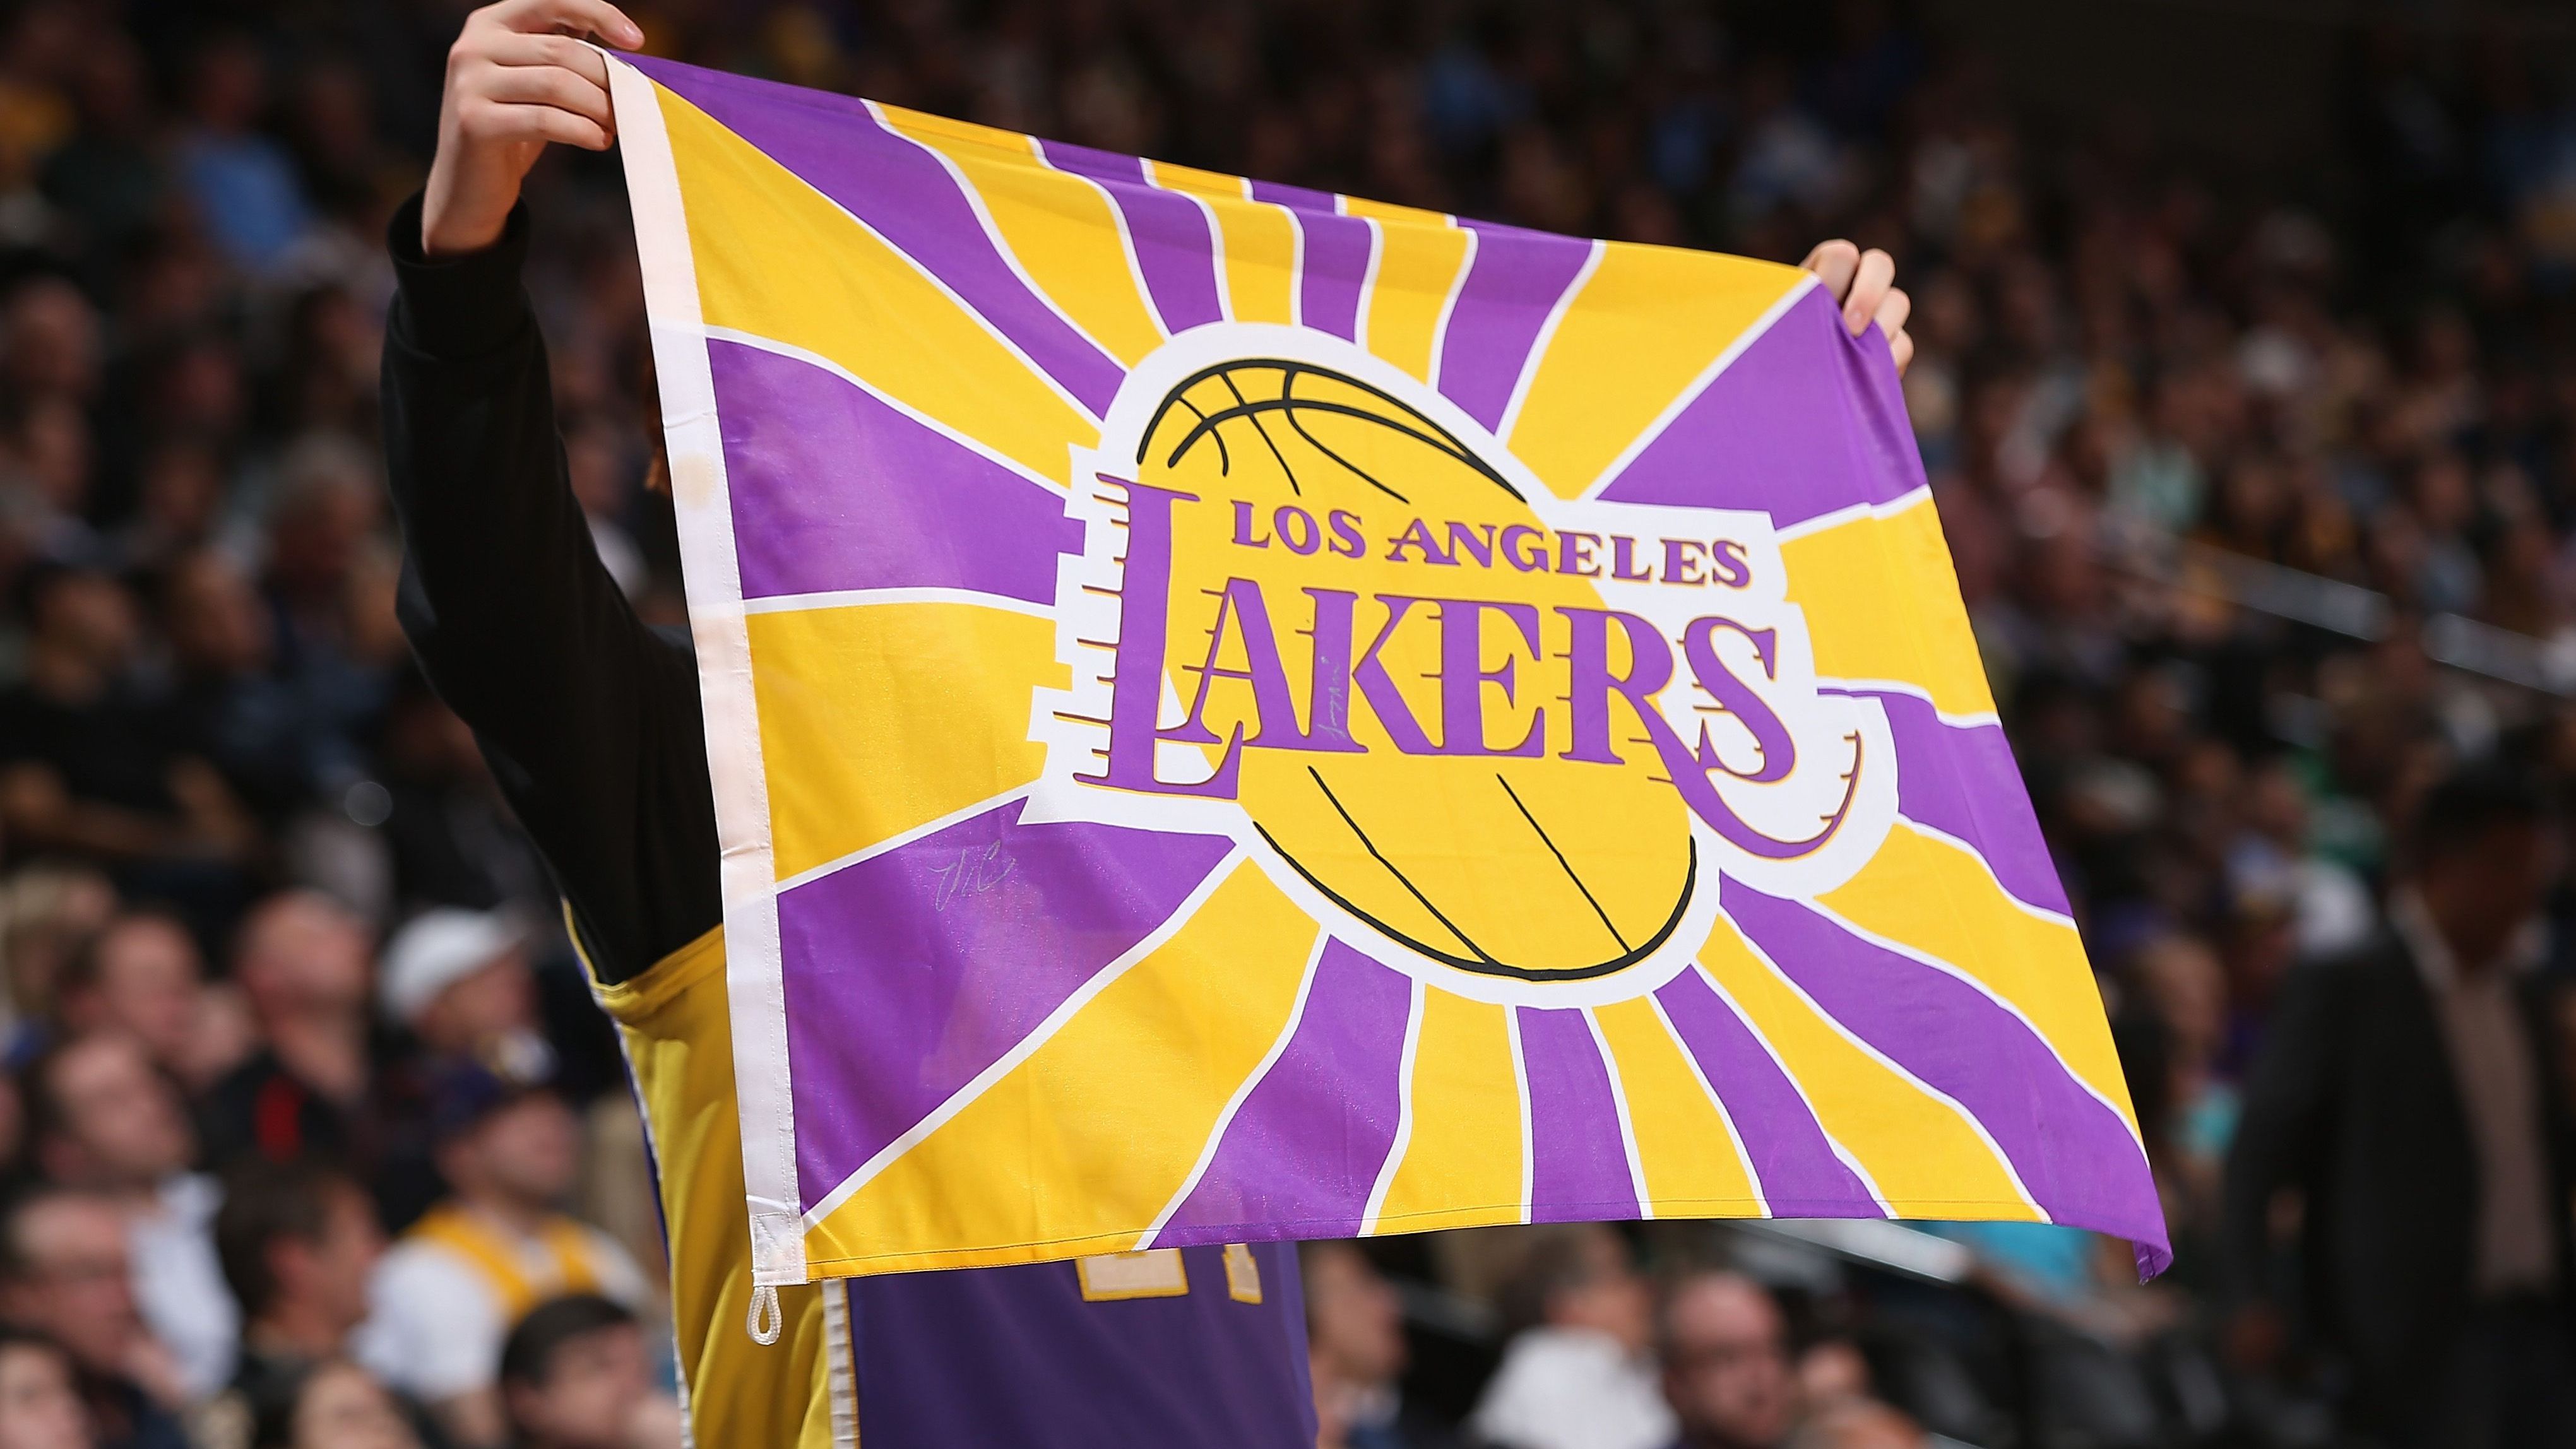 <strong>Los Angeles Lakers</strong><br>Ziemlich unpassend ist dagegen der Name der deutlich berühmteren Franchise in Los Angeles: Denn als Seenparadies ist die Stadt nun wirklich nicht bekannt. Den Namen haben die Lakers aus Minnesota, dem "Land der 10.000 Seen", übernommen, von wo das Team 1960 nach Kalifornien zog. Weil der Name bereits seit 1946 NBA-Tradition hatte, wurde er nach der Relocation beibehalten.